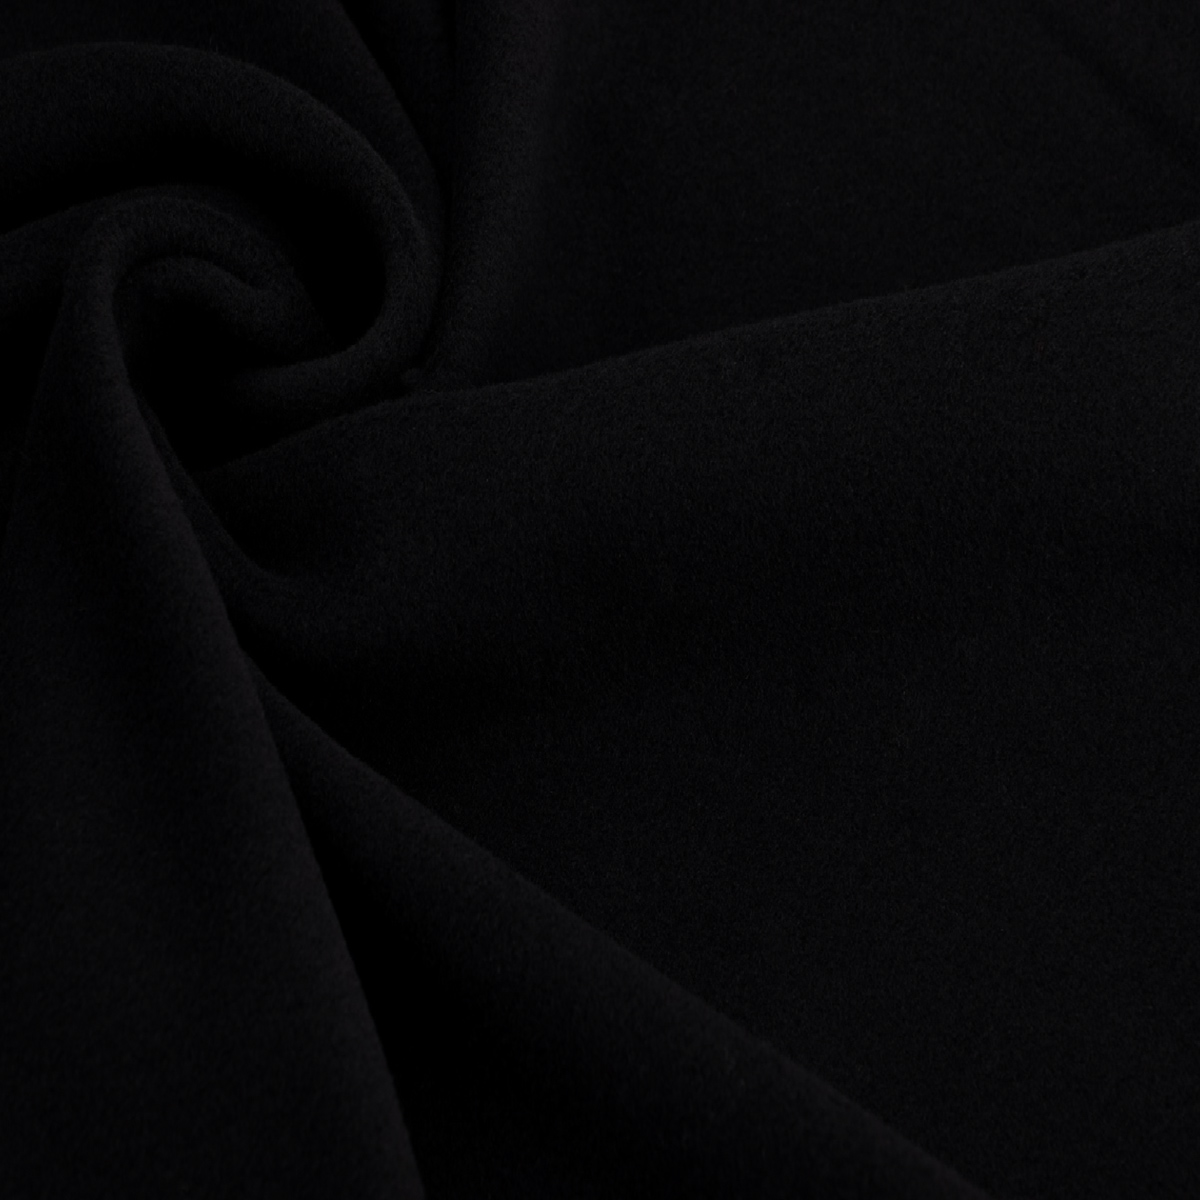 Coat fabric, black